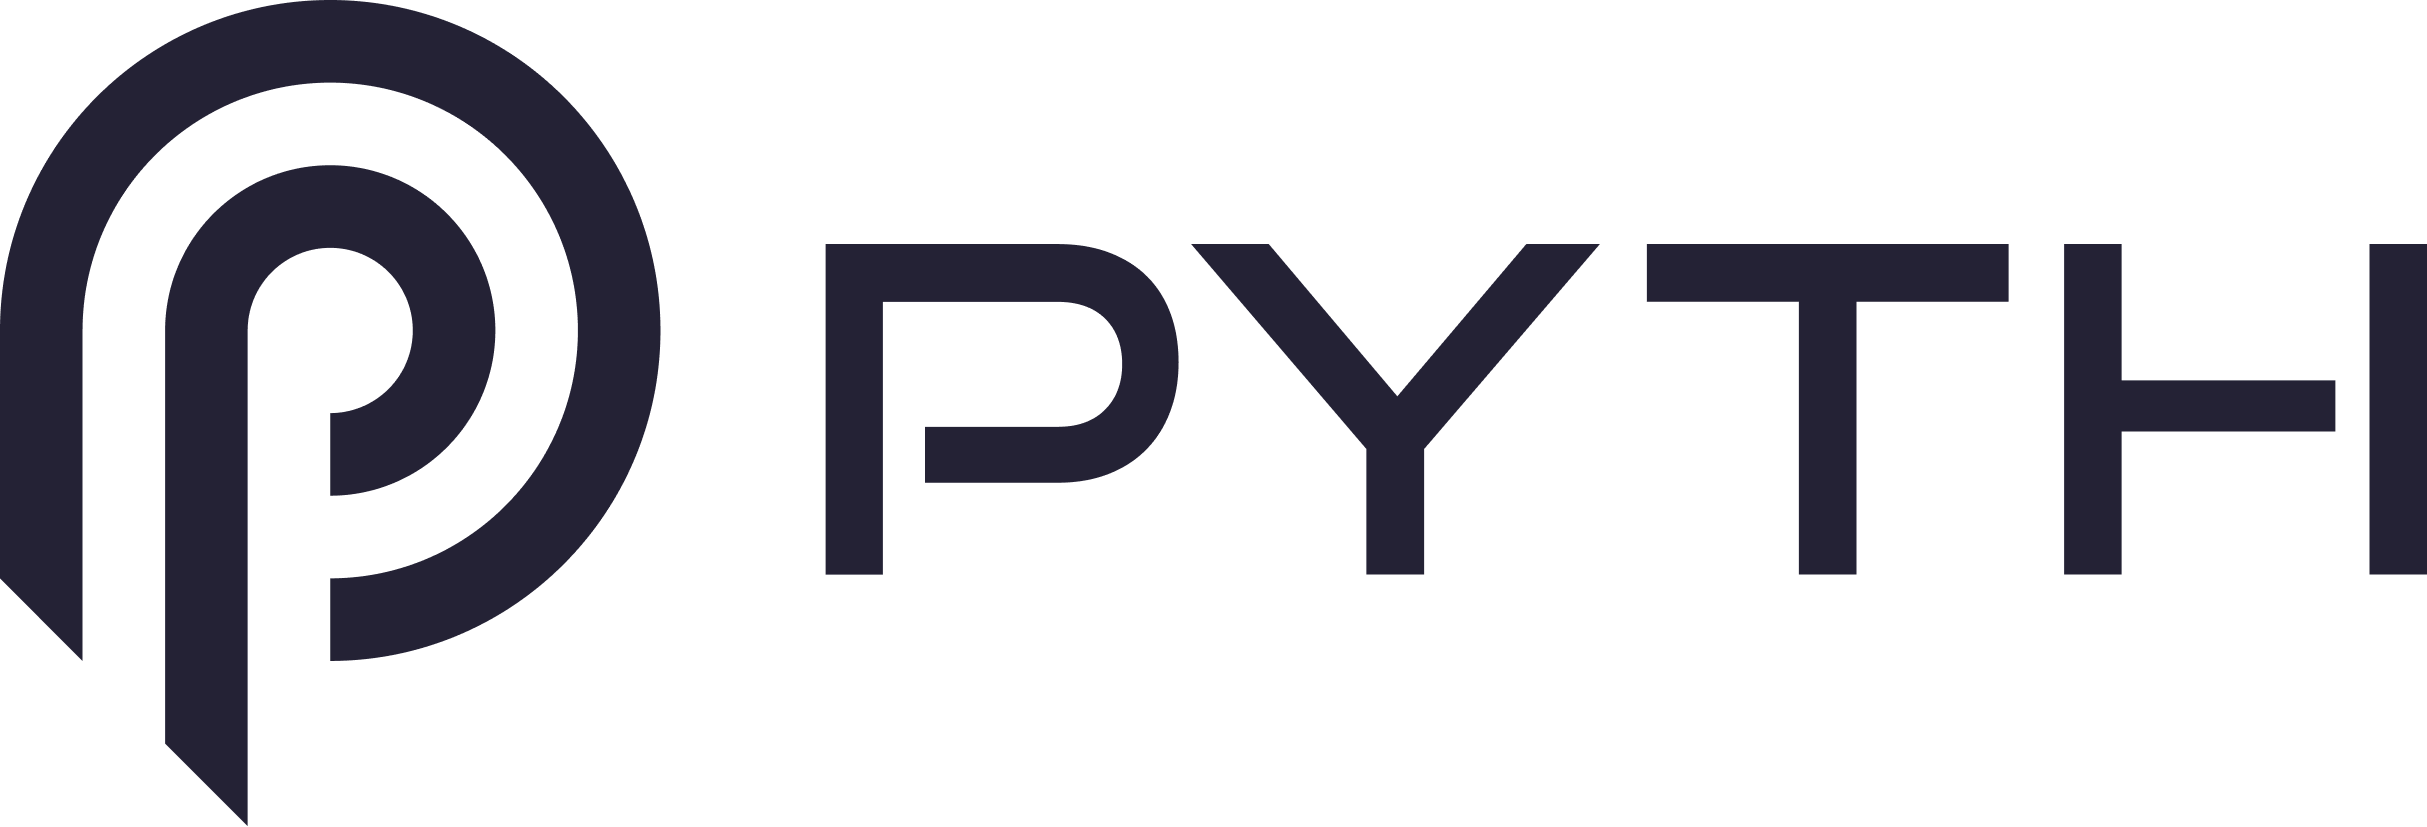 شبکه Pyth چیست؟ $PYTH - آسیا کریپتو امروز